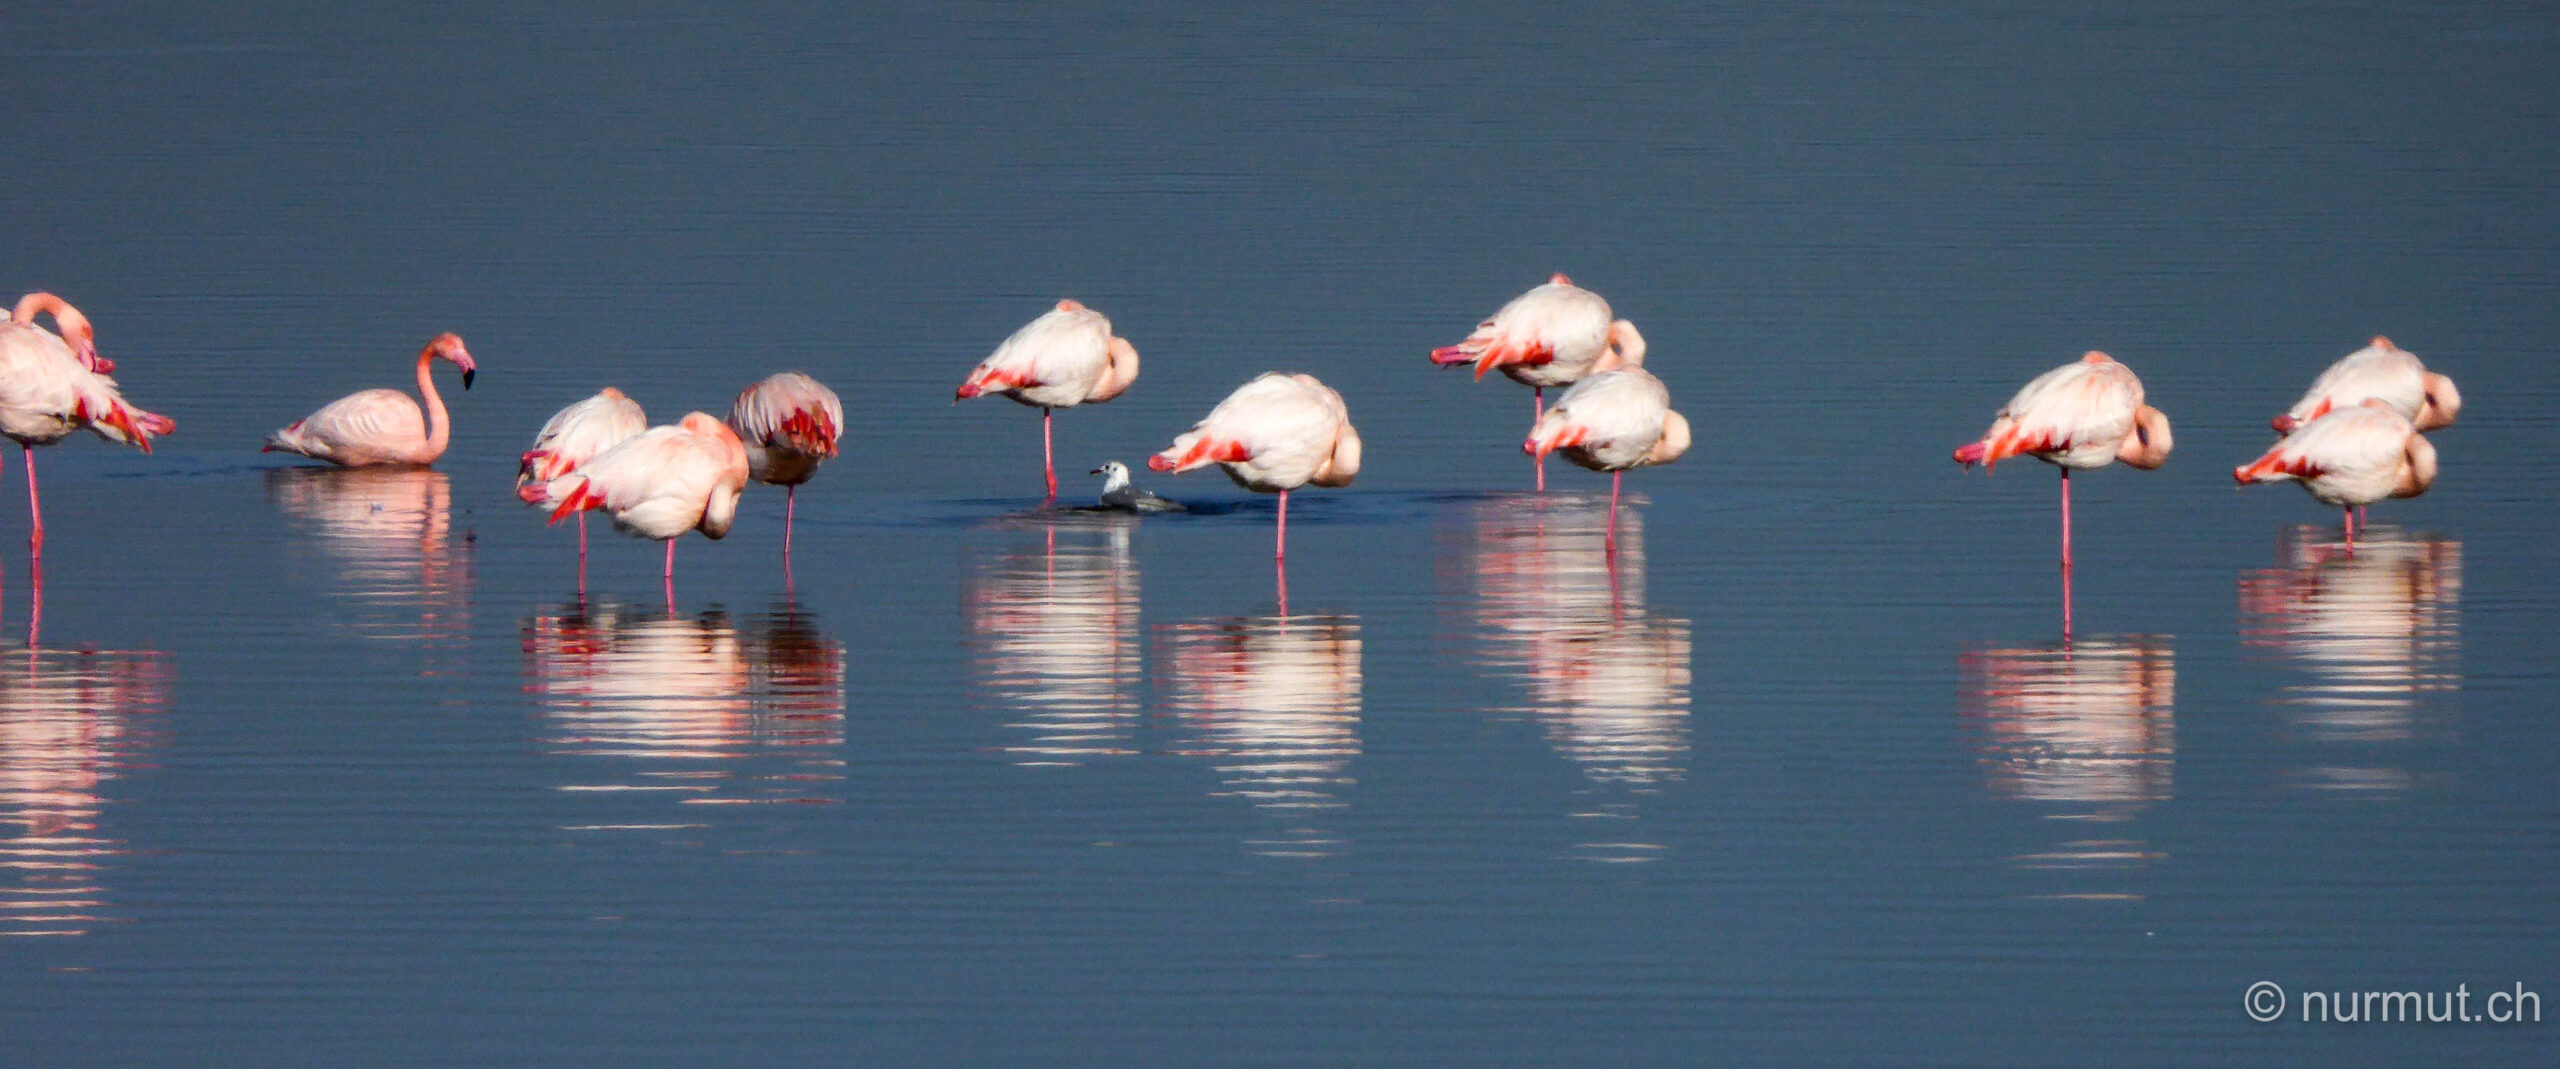 camargue-suedfrankreich-les-saintes-maries-de-la-mer-flamingos